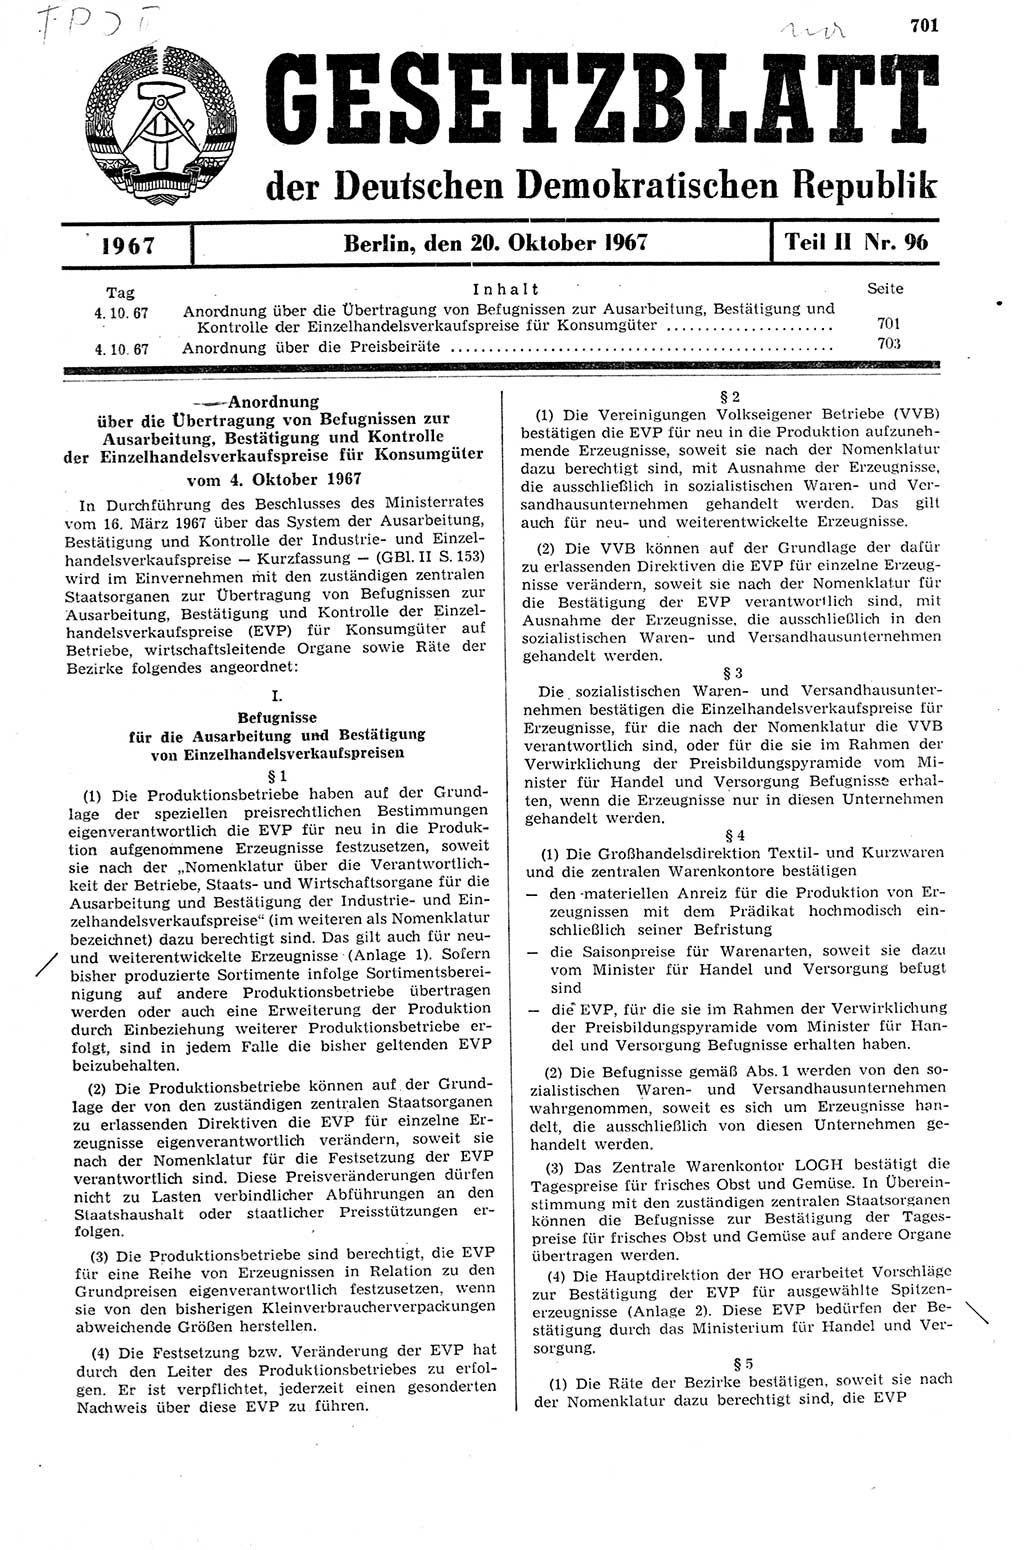 Gesetzblatt (GBl.) der Deutschen Demokratischen Republik (DDR) Teil ⅠⅠ 1967, Seite 701 (GBl. DDR ⅠⅠ 1967, S. 701)